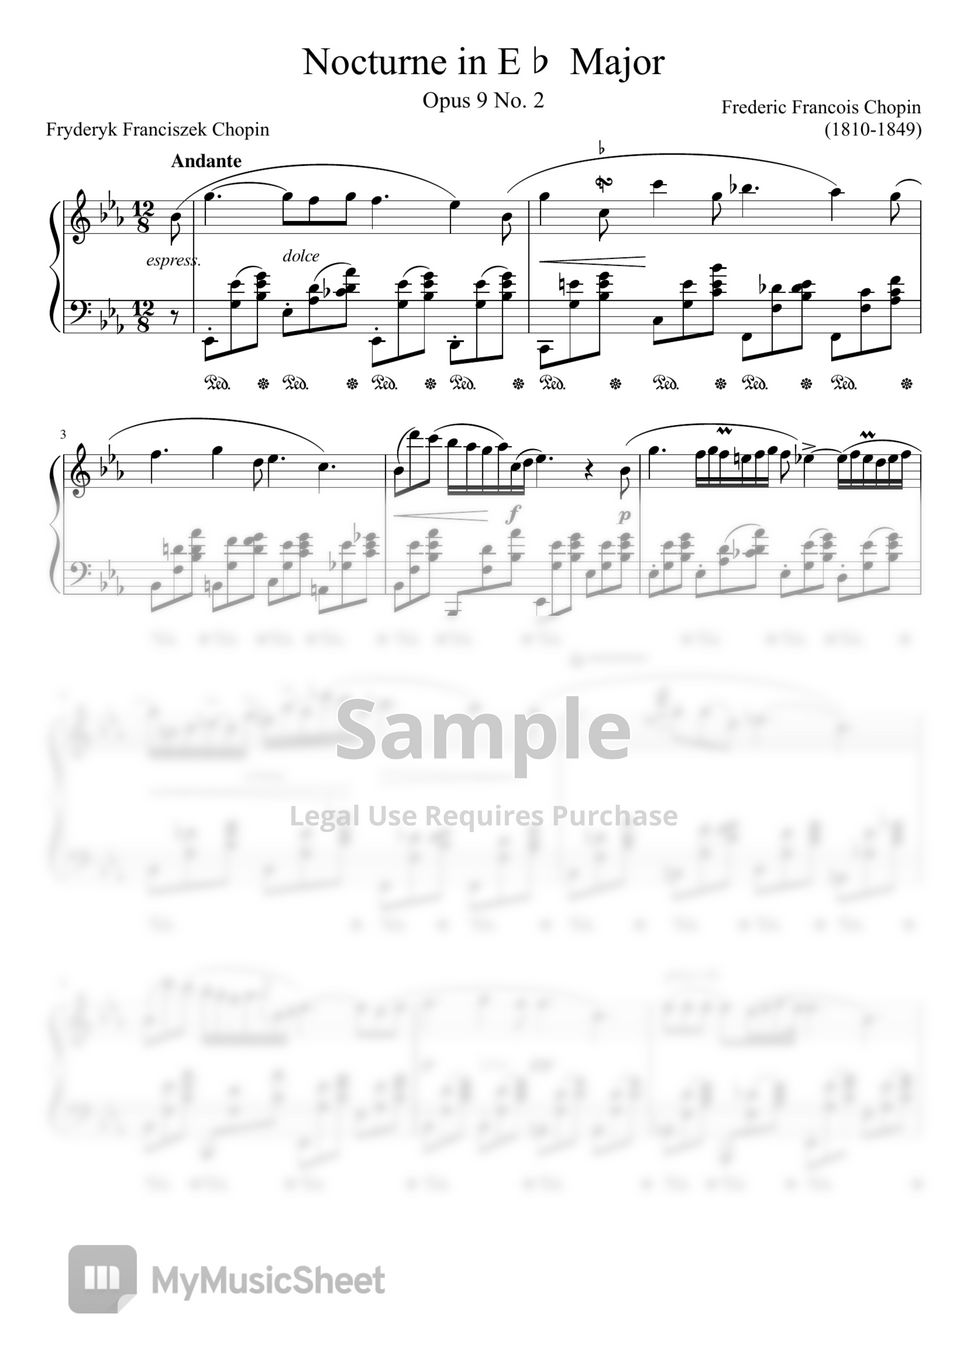 F.F.Chopin - Chopin Nocturne Op.9 No.2 in E Flat Major by F.F.Chopin